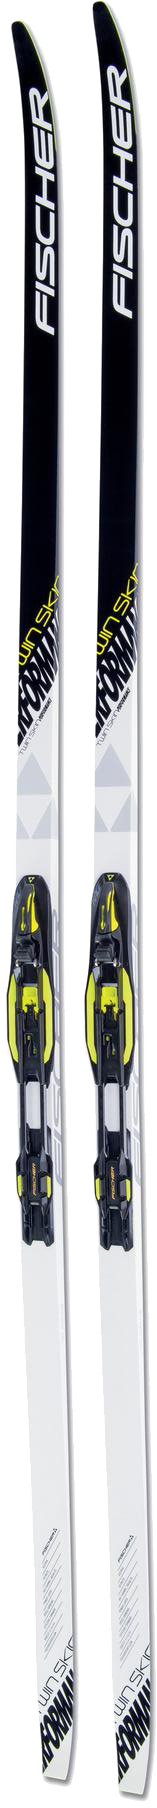 Цена прогулочные лыжи Fischer Twin Skin Perfomance IFP 197 см в Киеве